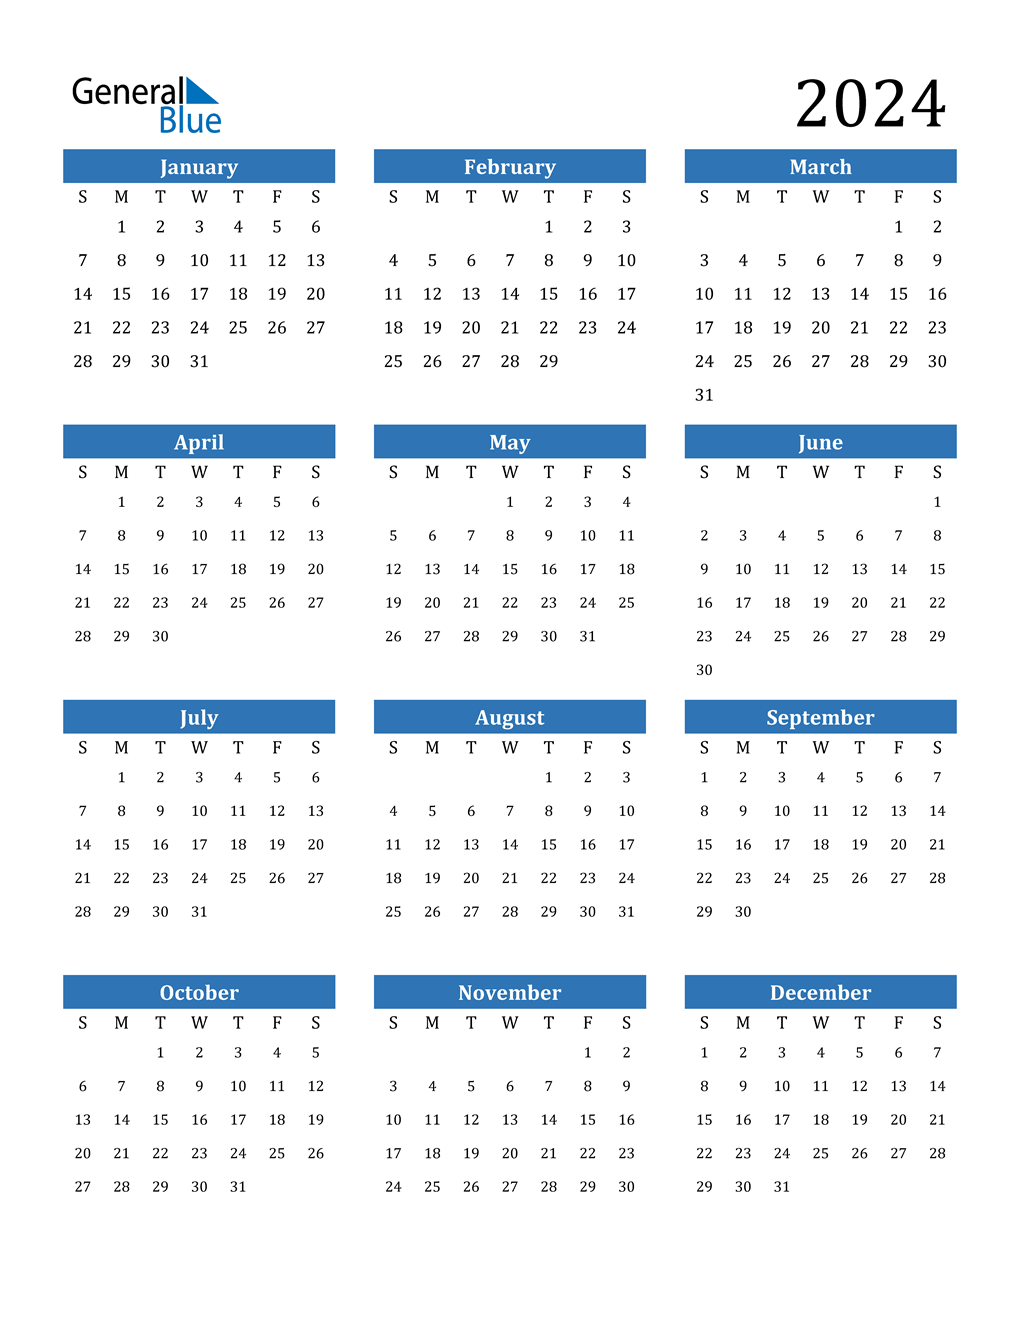 2024 Printable Calendar Printable World Holiday